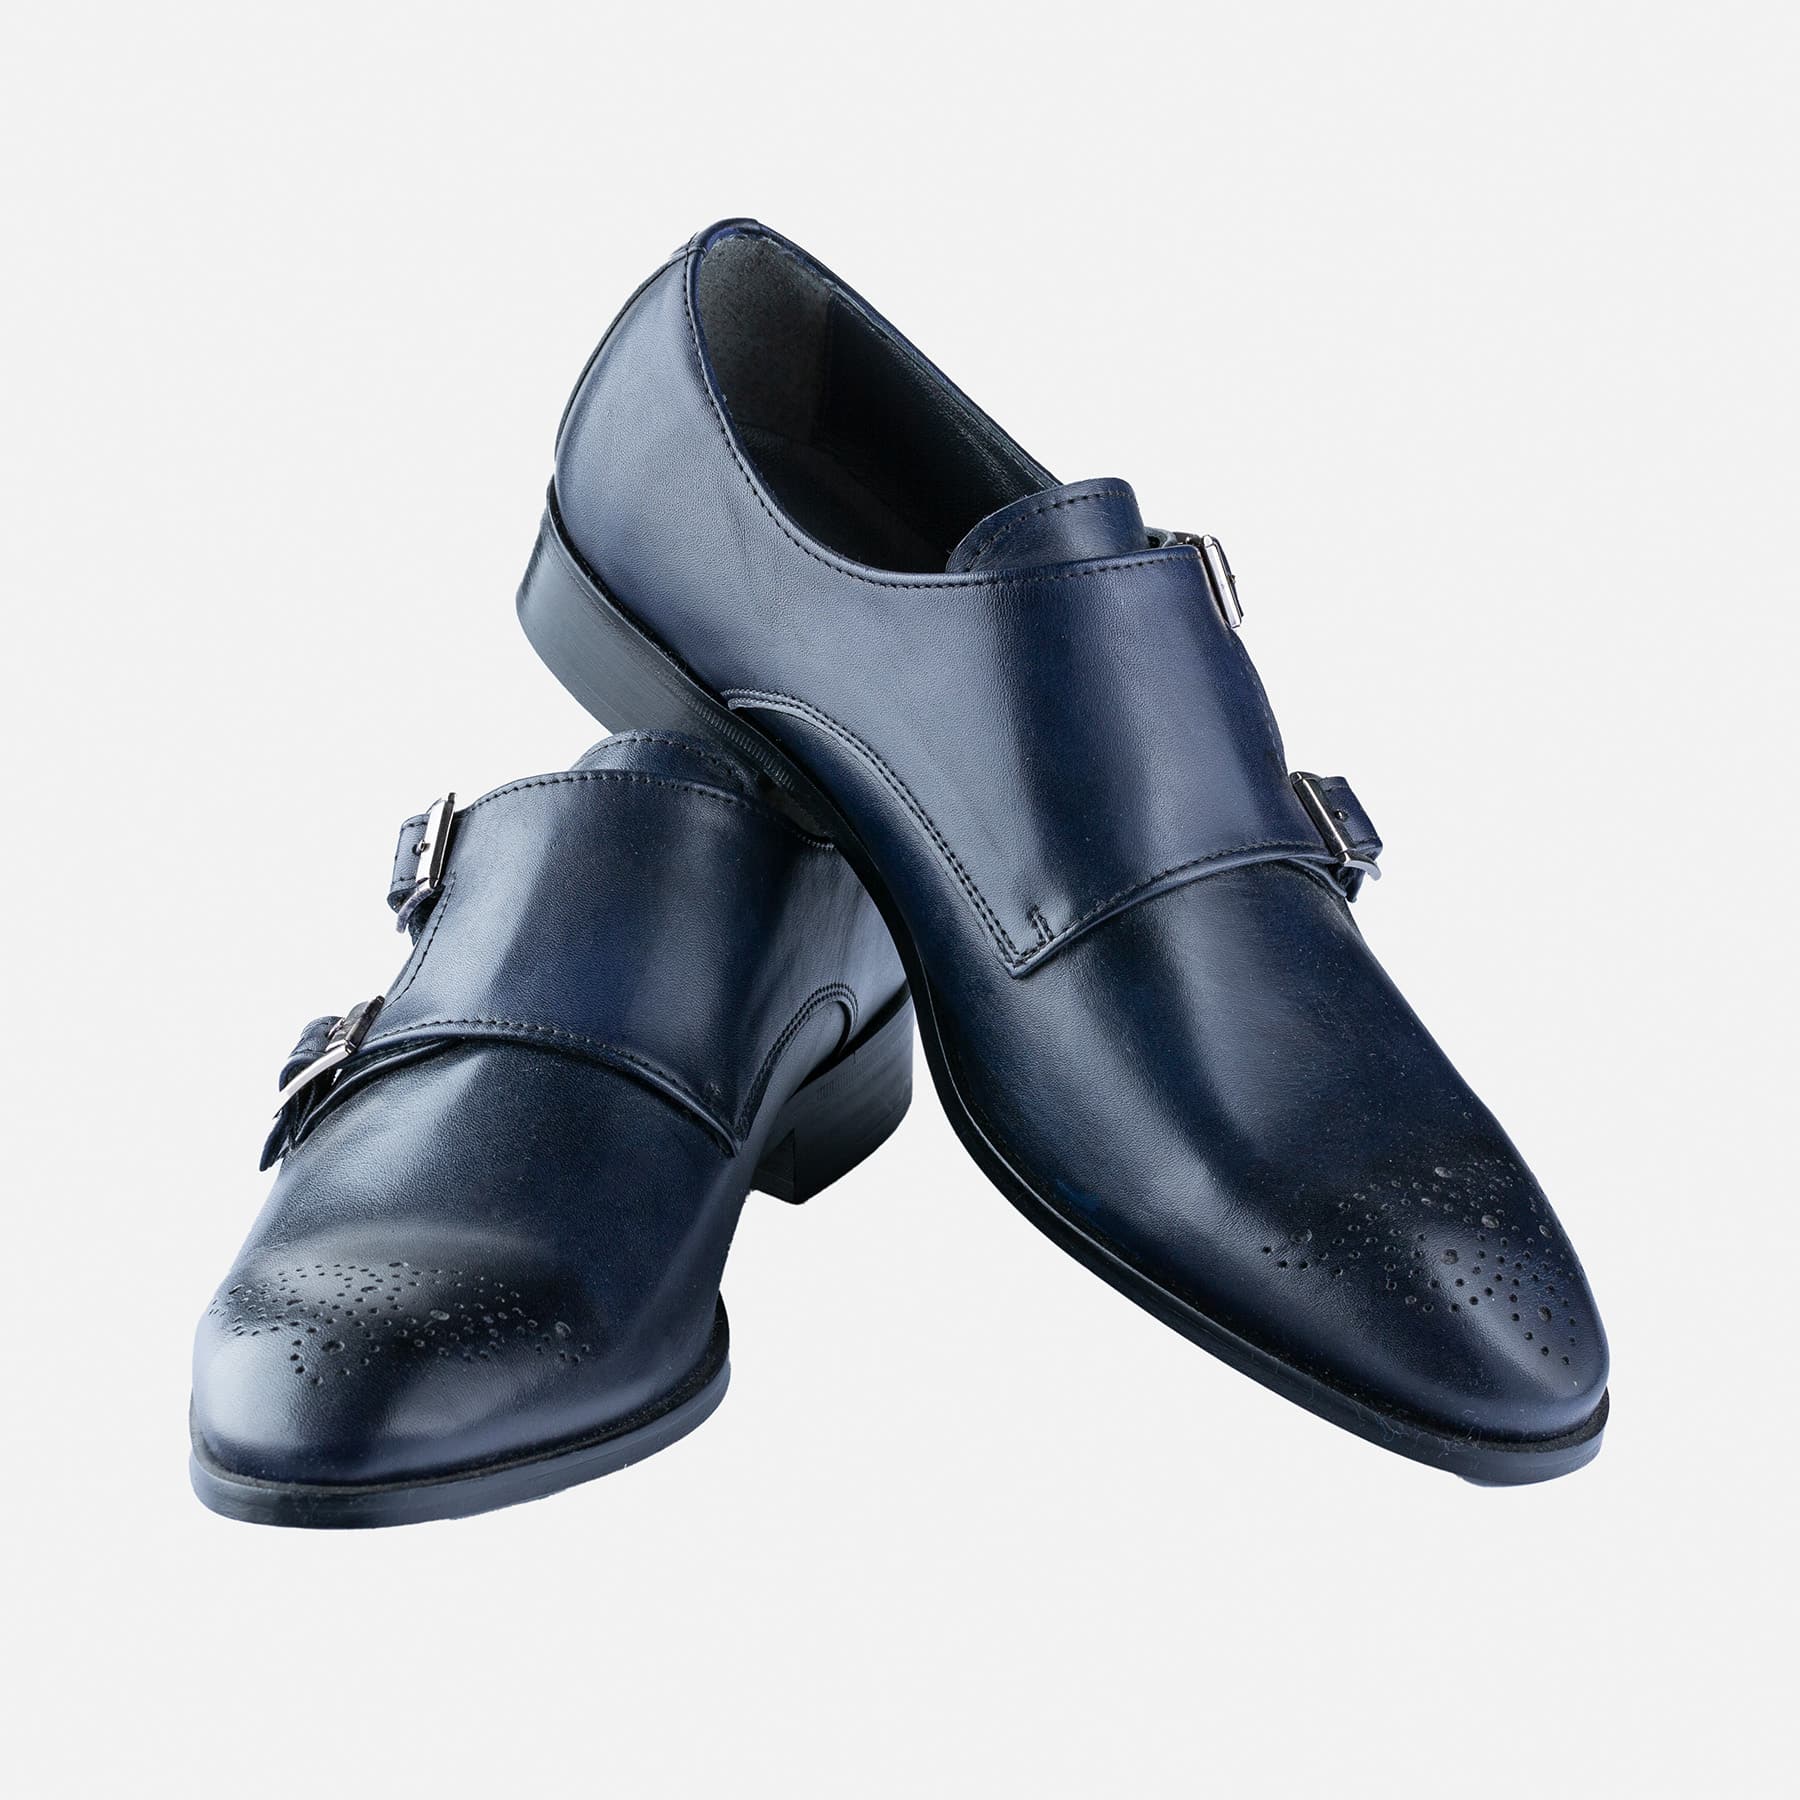 Mastery shake Wizard Zapatos Azules Hebillas | Gentleman Don Benito, Moda Hombre.